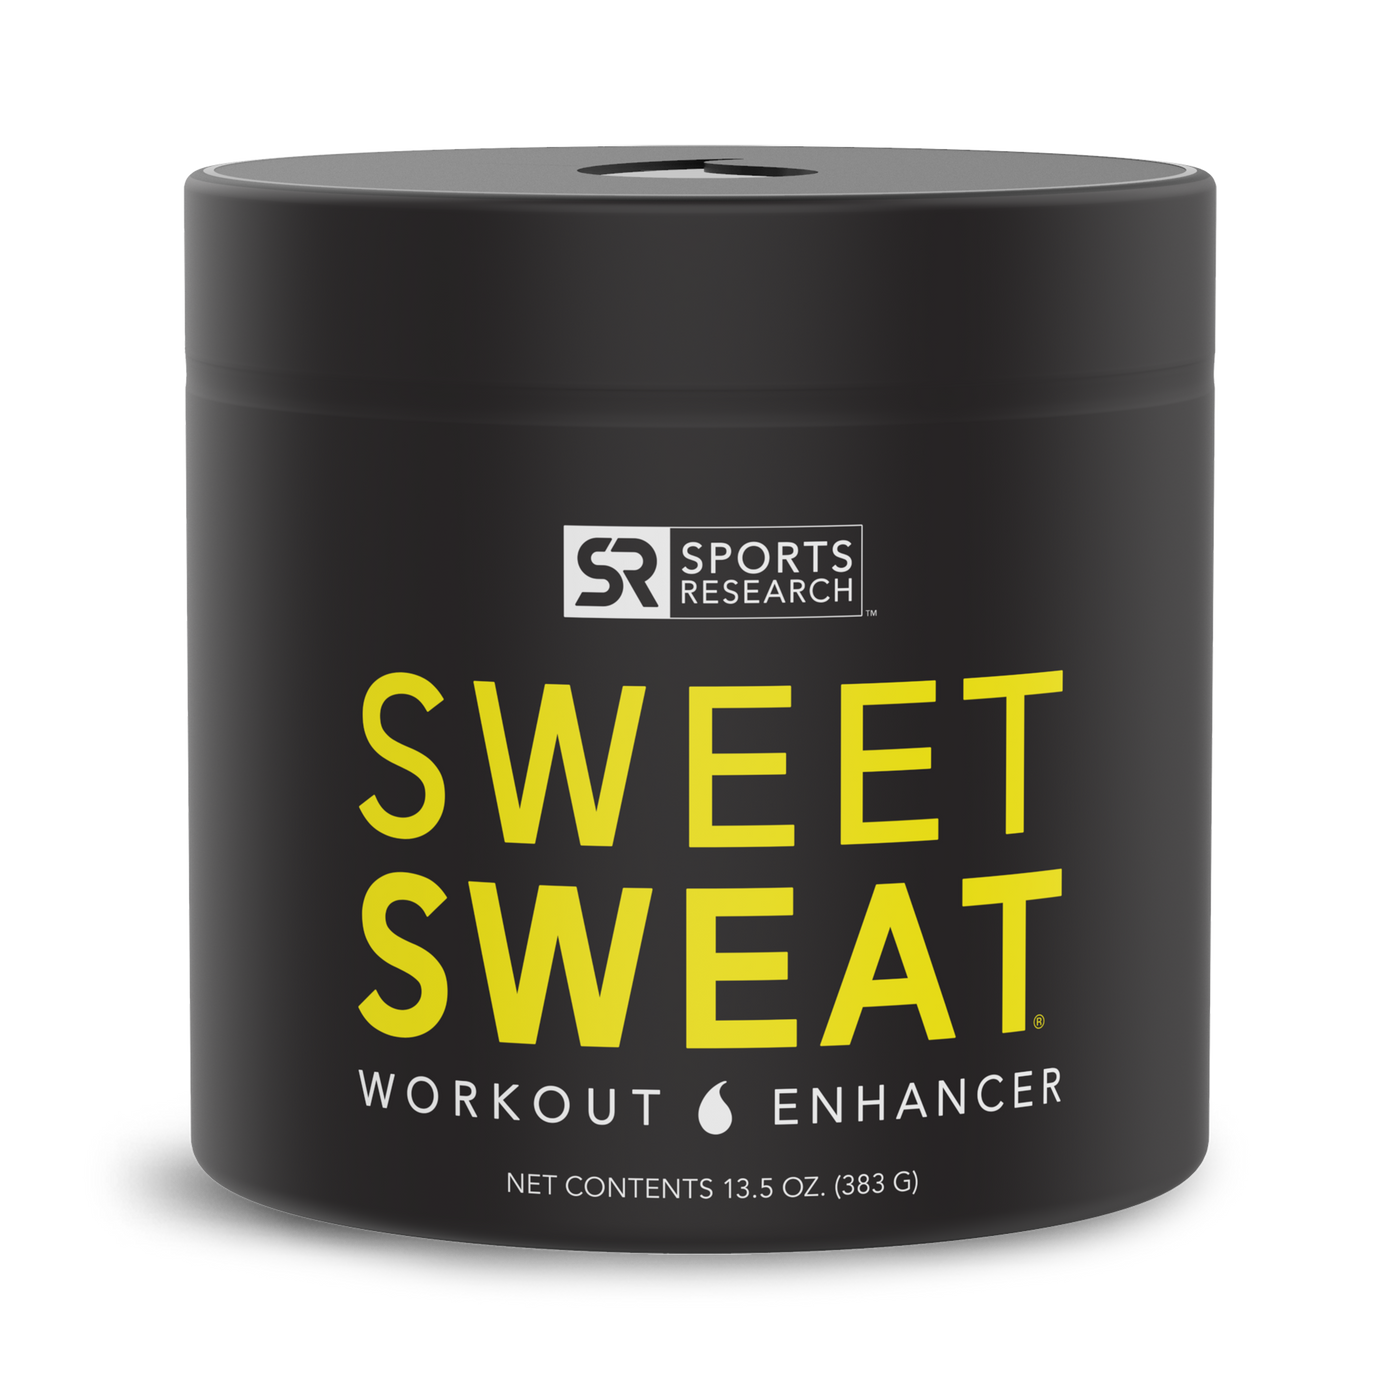 Sweet Sweat Gel en Frasco